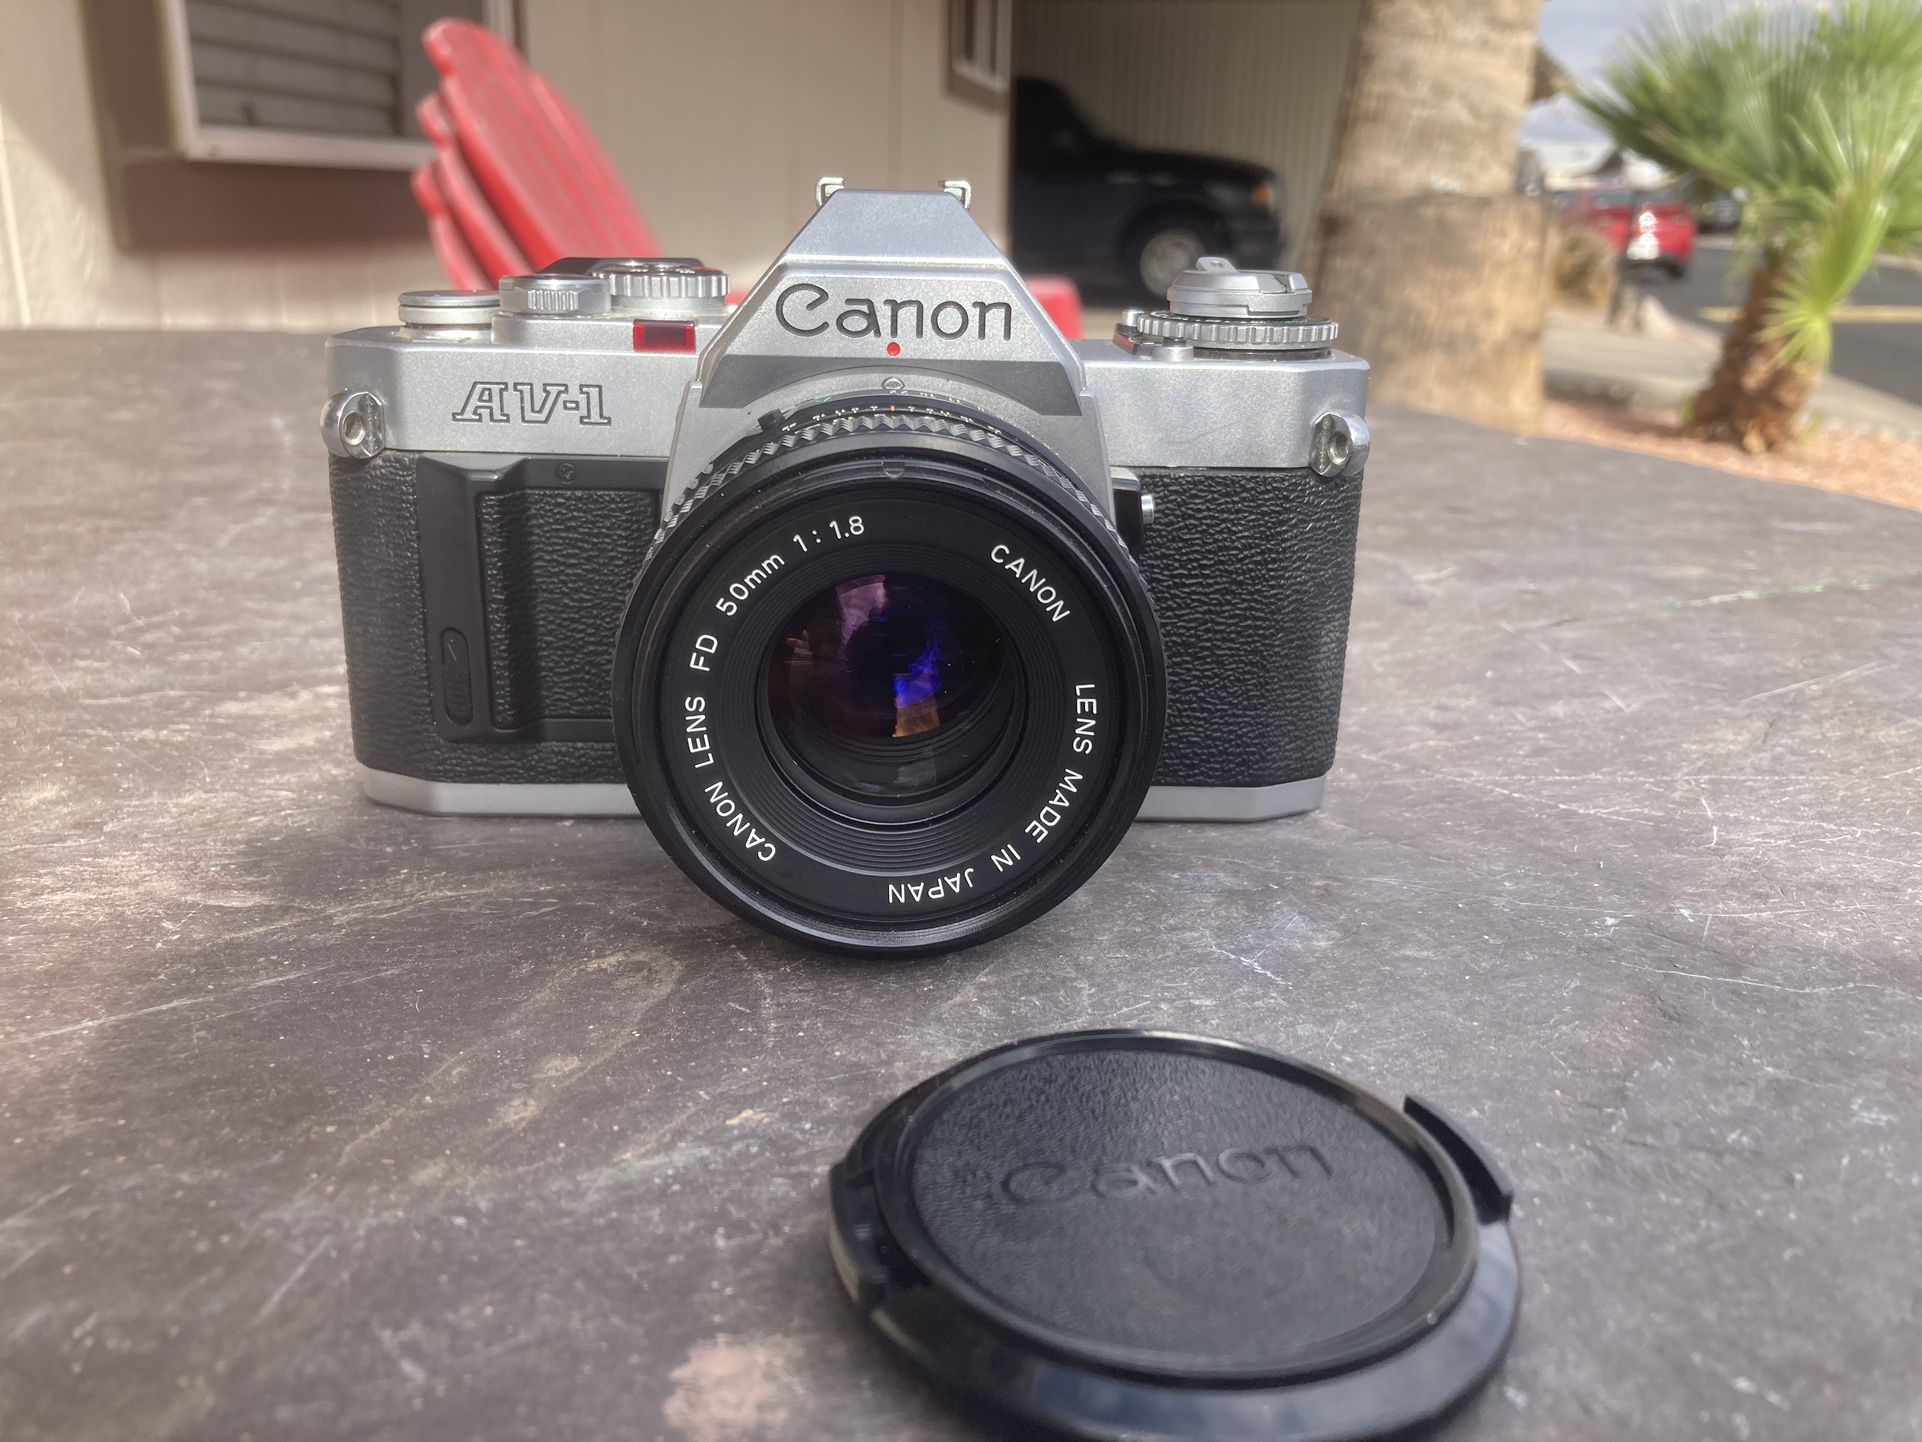 Canon AV-1 35mm Film Camera with 50mm F1.8 Lens 